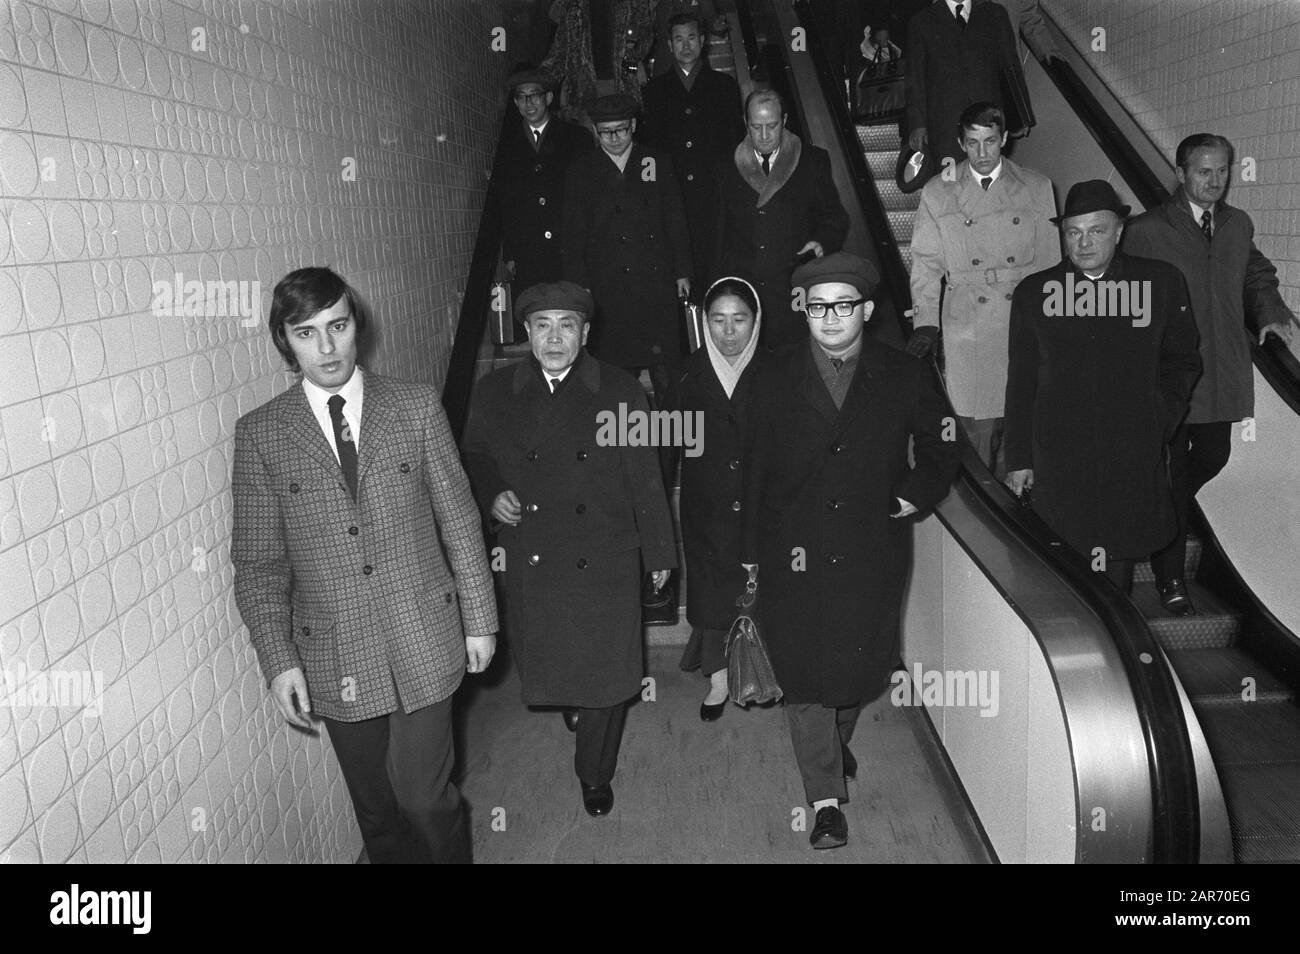 La délégation du gouvernement nord-coréen arrive à Schiphol Date : 30 novembre 1971 lieu : Noord-Holland, Schiphol mots clés : arrivées Banque D'Images